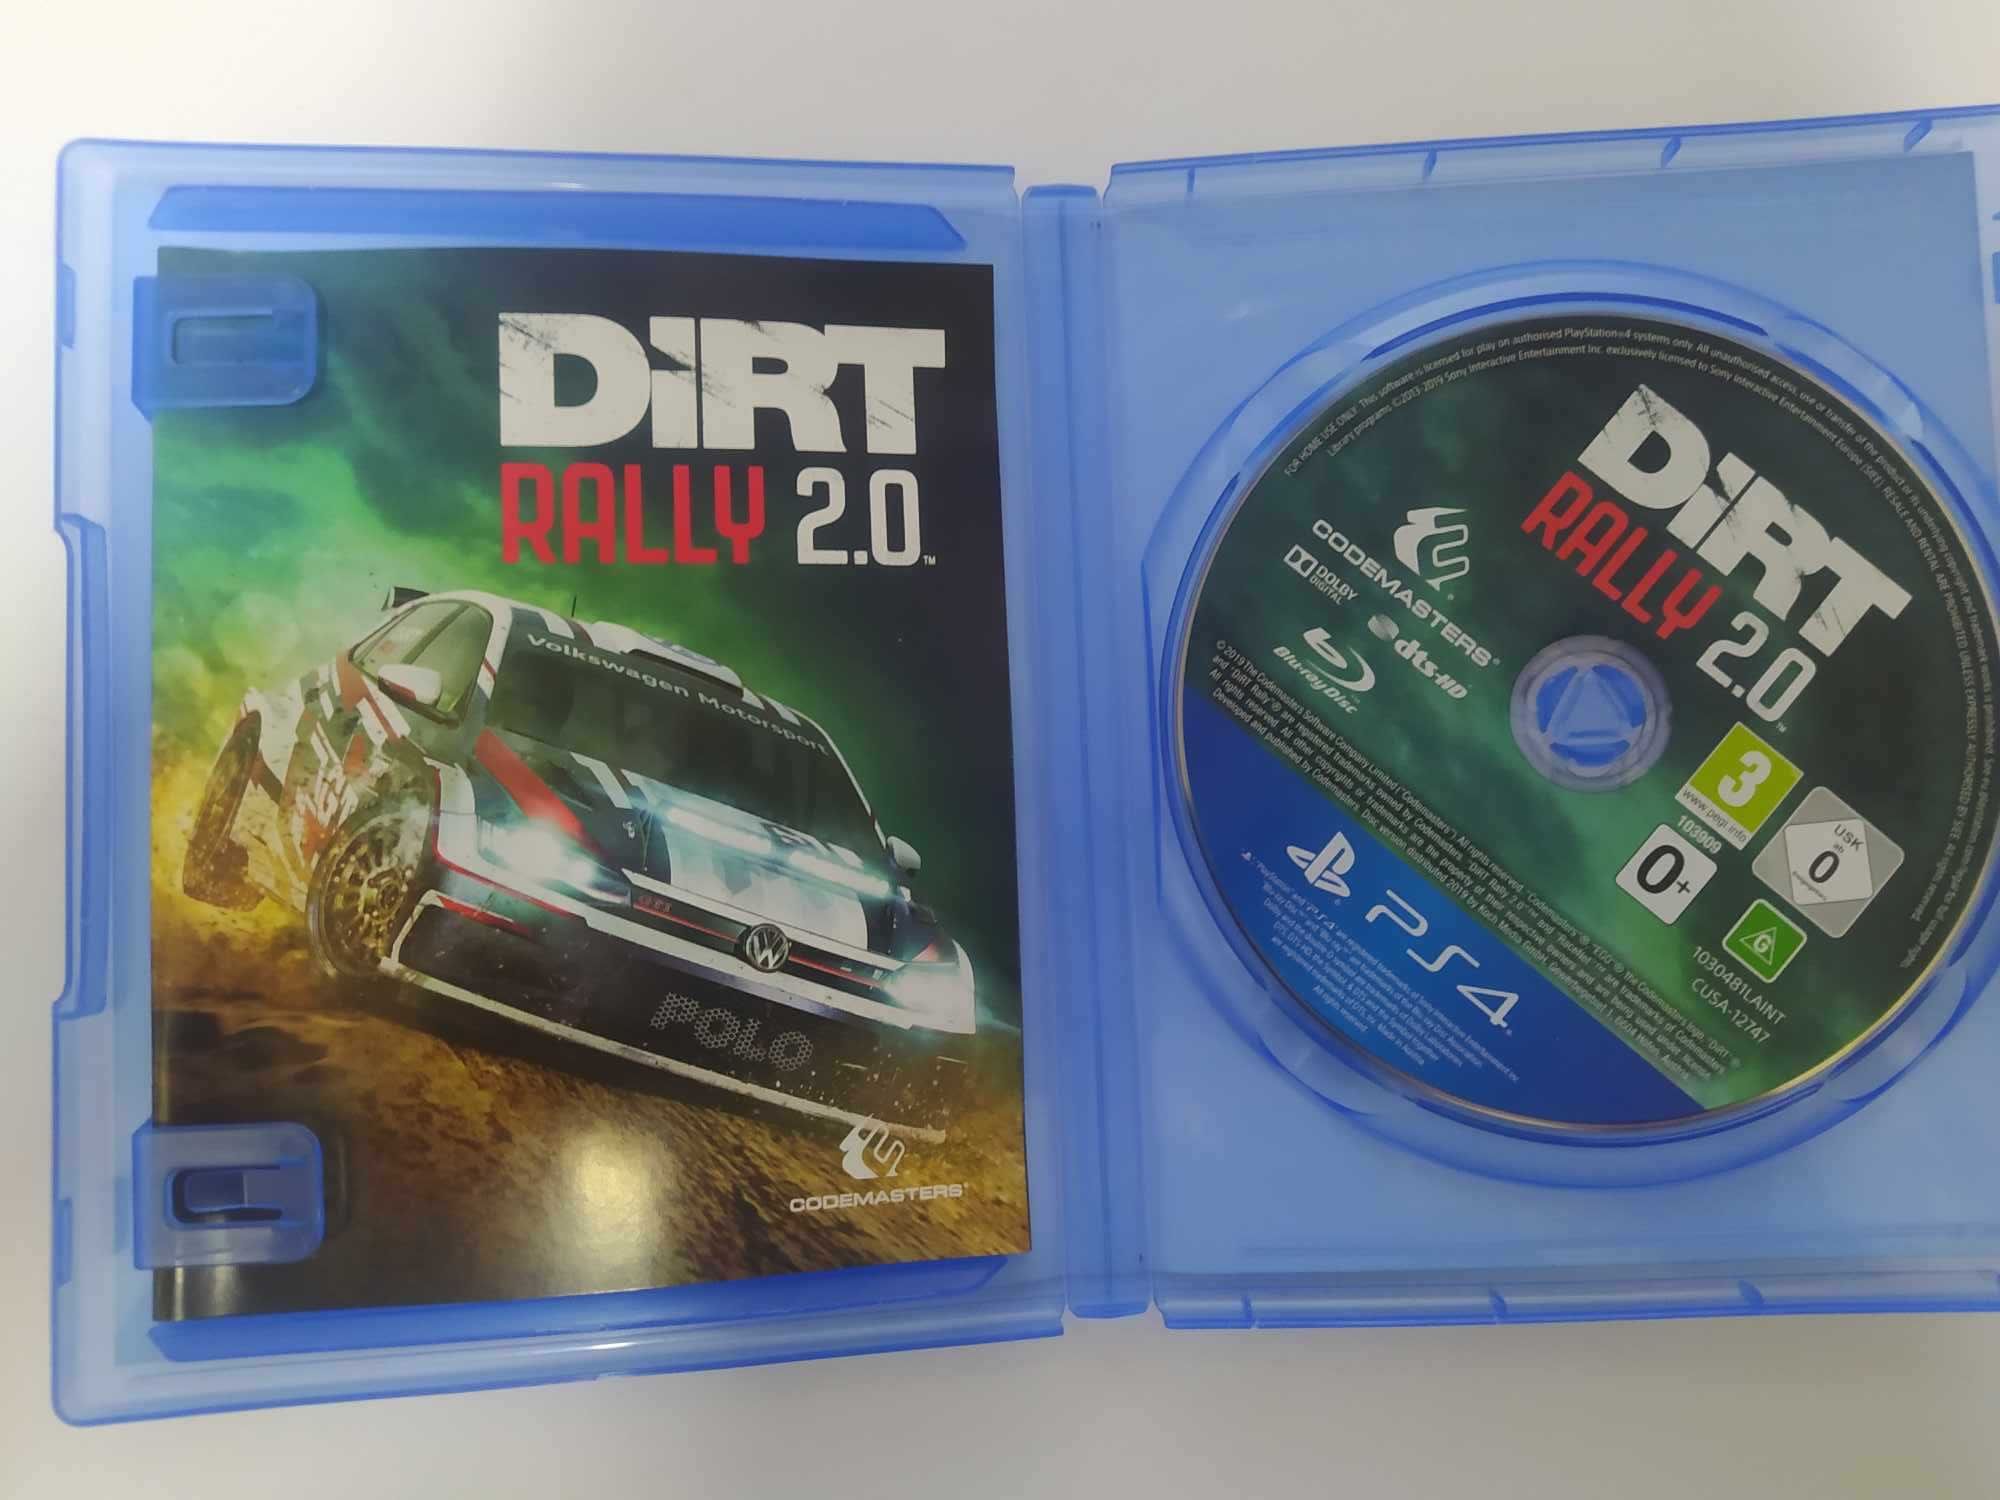 DiRT Rally 2.0 PS4 Polski dubbing w grze